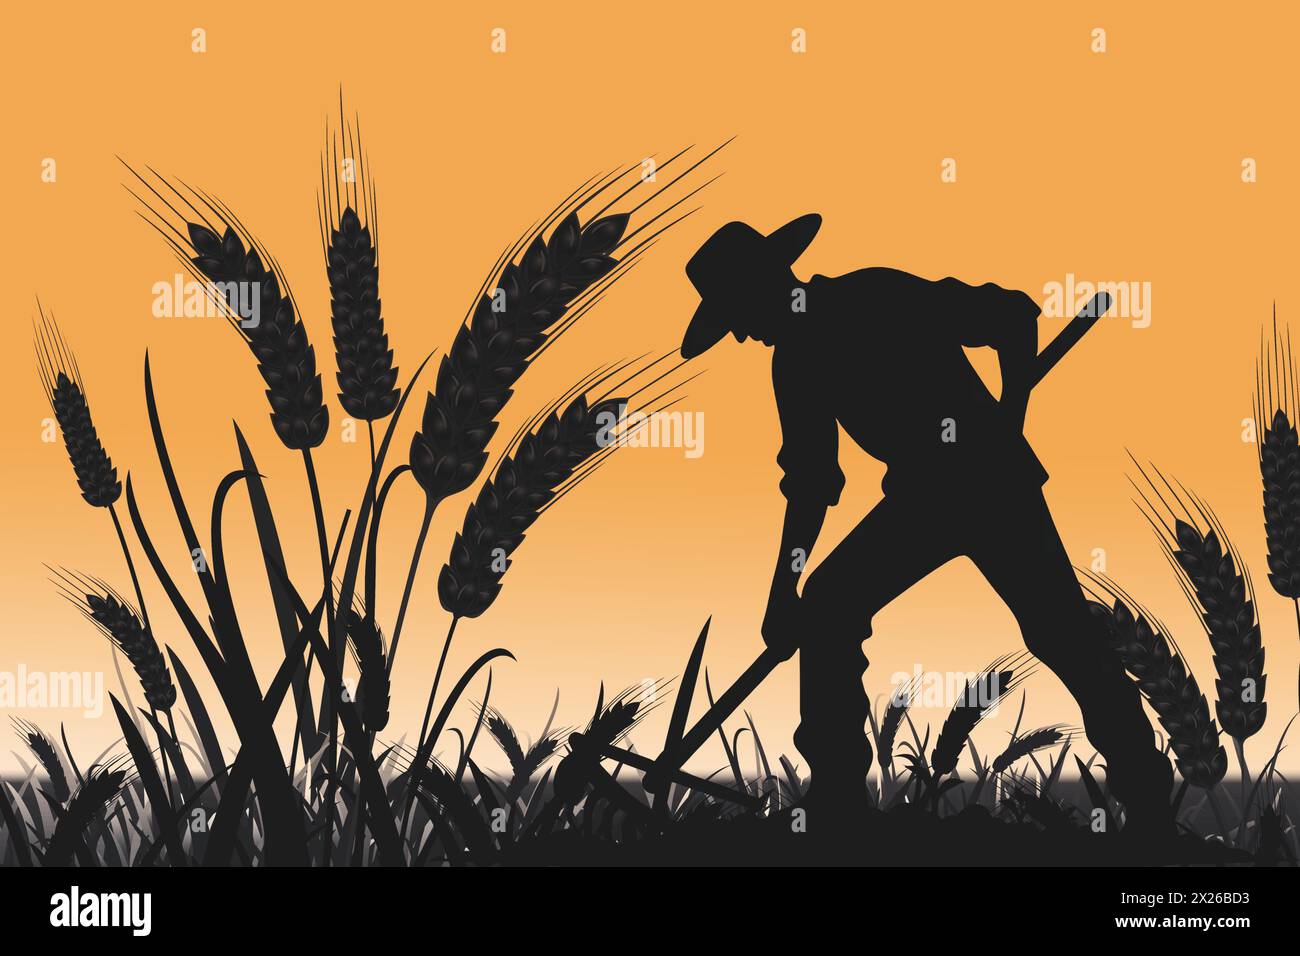 Dans la lueur chaude du crépuscule, la silhouette d'un agriculteur travaille sans relâche, symbolisant le dévouement derrière nos récoltes, marquant la Journée mondiale des agriculteurs. Illustration de Vecteur